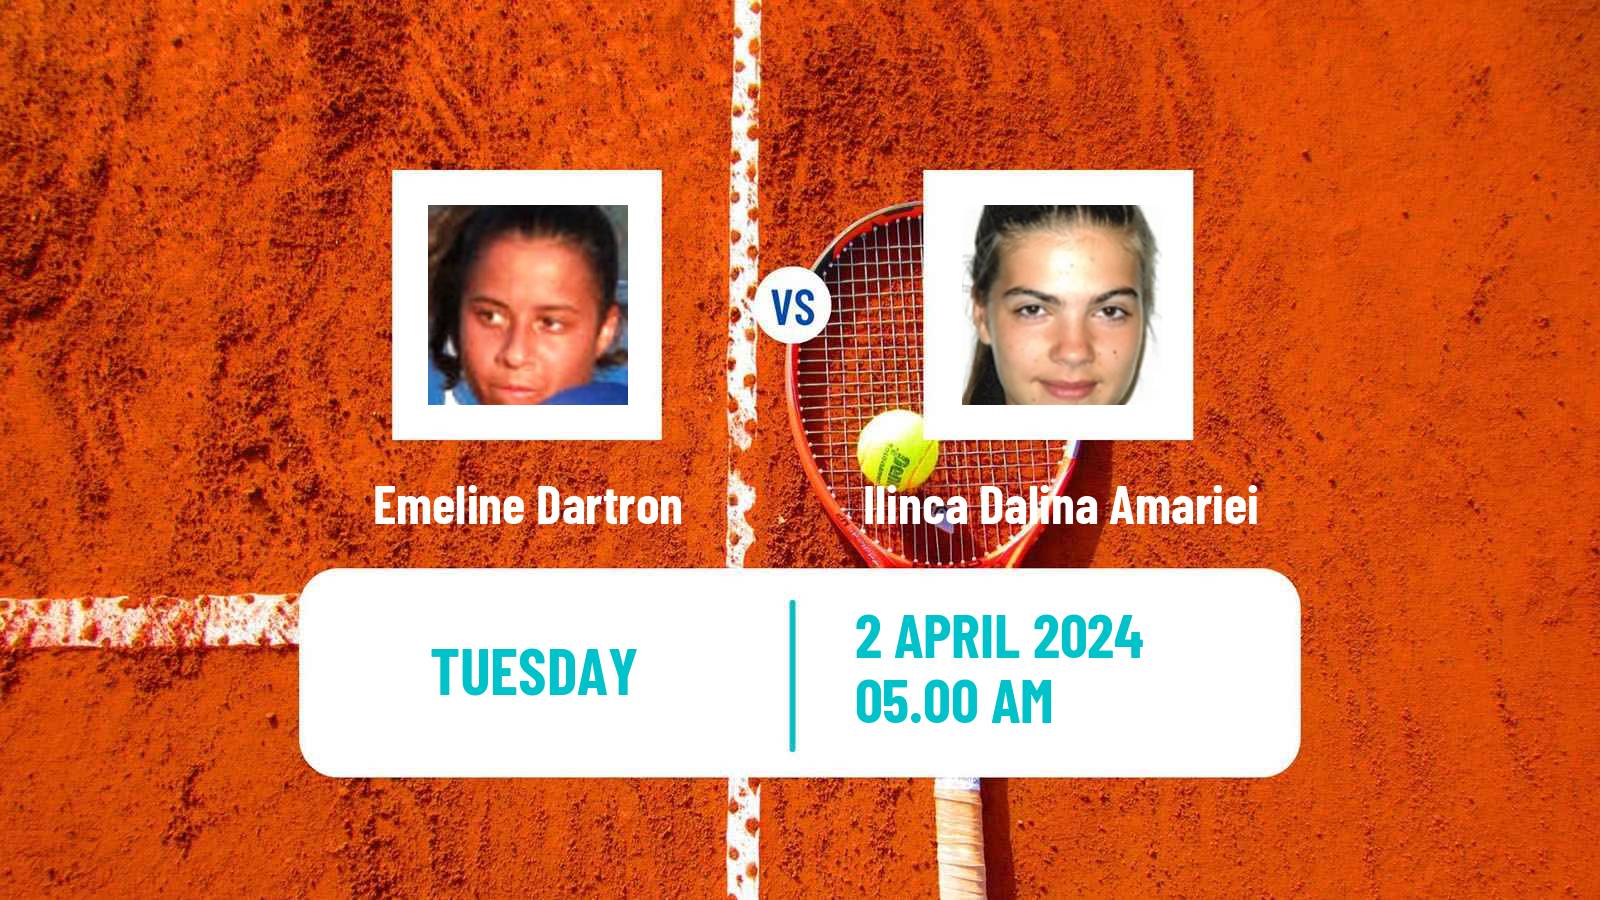 Tennis ITF W35 Hammamet 3 Women Emeline Dartron - Ilinca Dalina Amariei